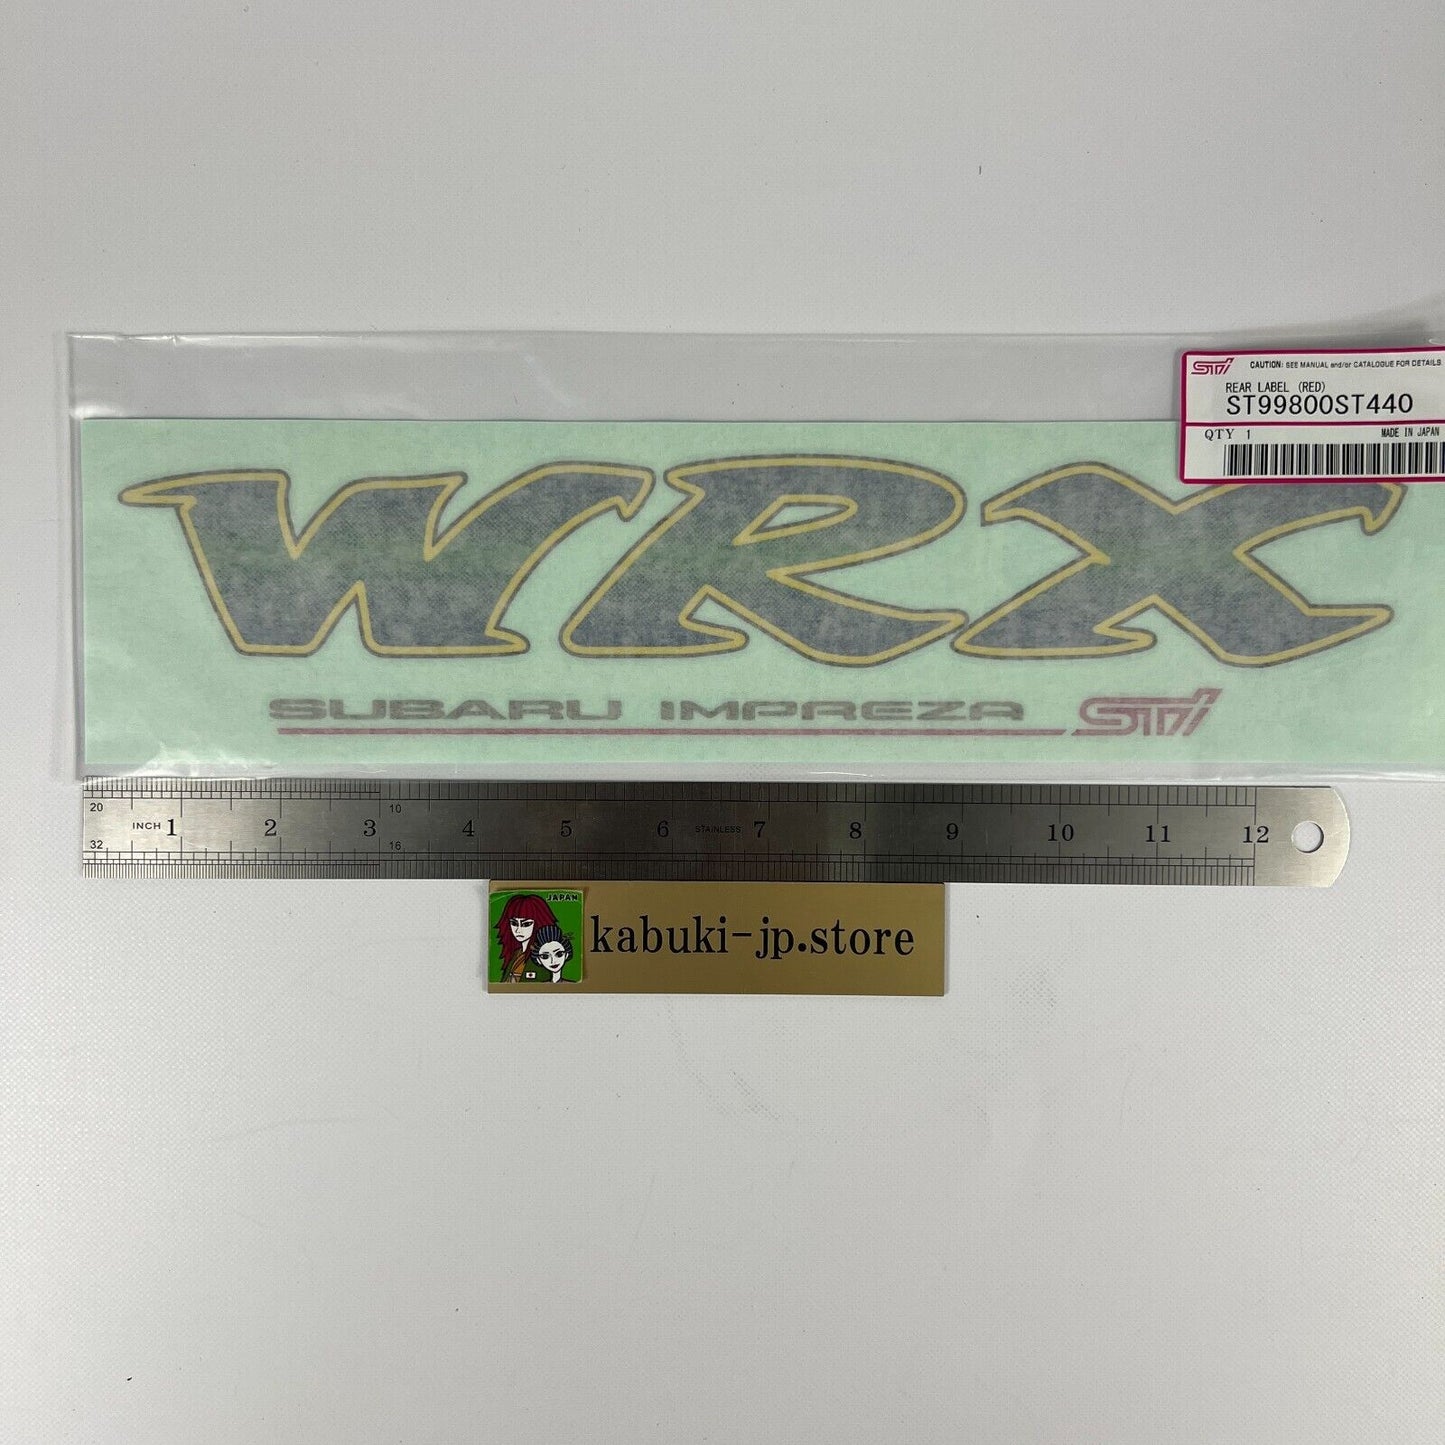 SUBARU Genuine GC8 Impreza WRX STI Rear Trunk White Decal Sticker OEM JDM 93070